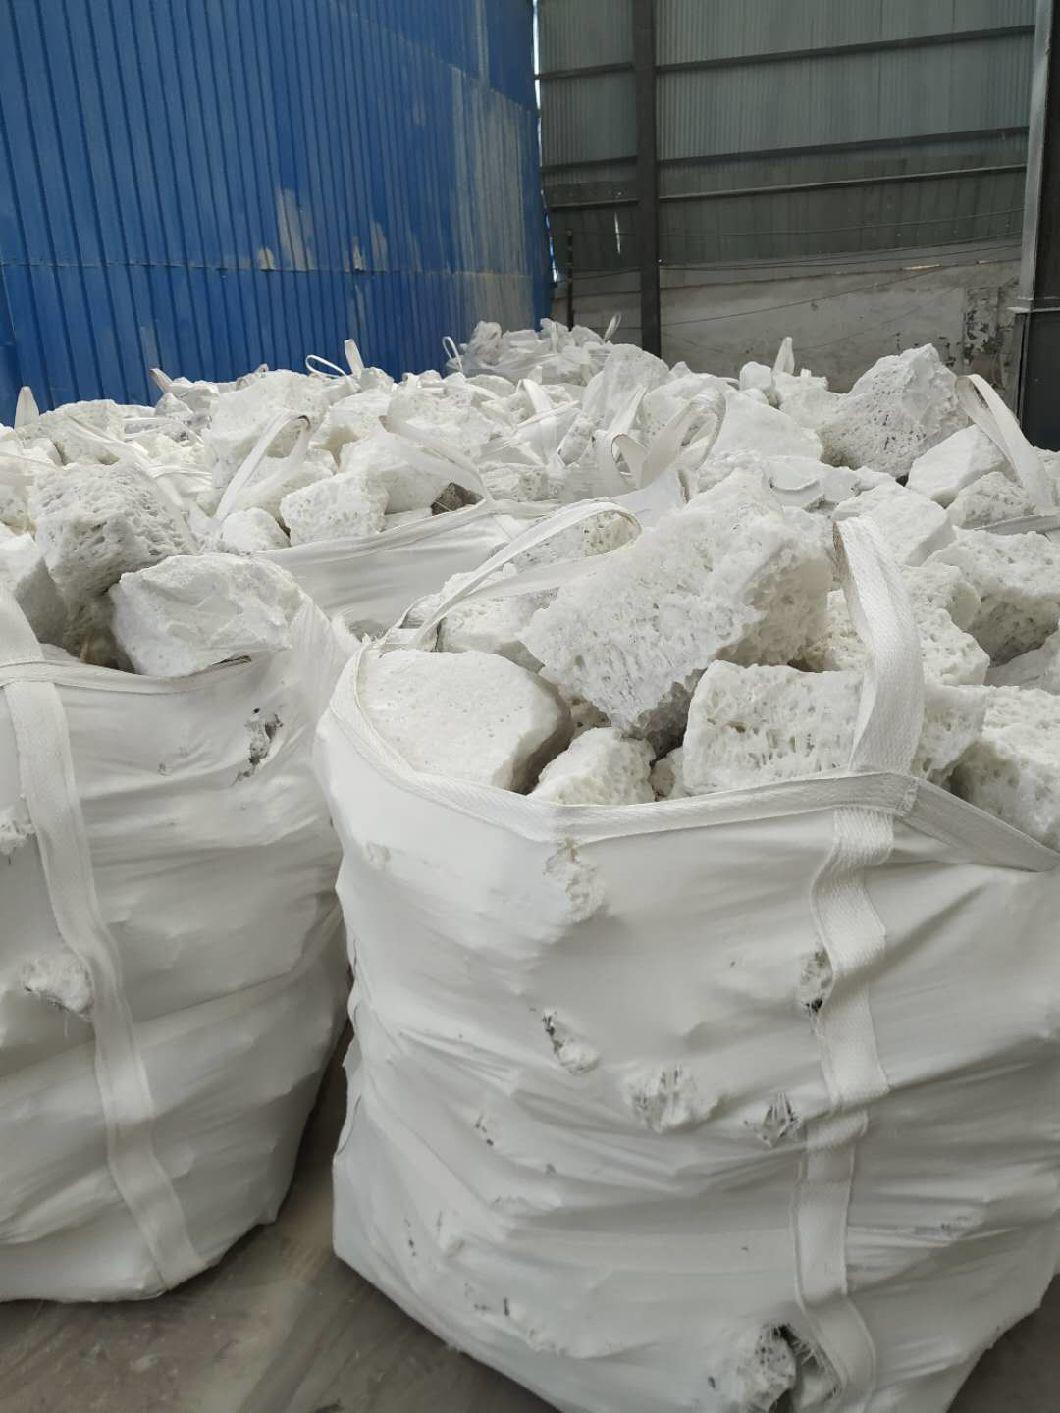 Low Price White Corundum Powder Used for Abrasive Tools